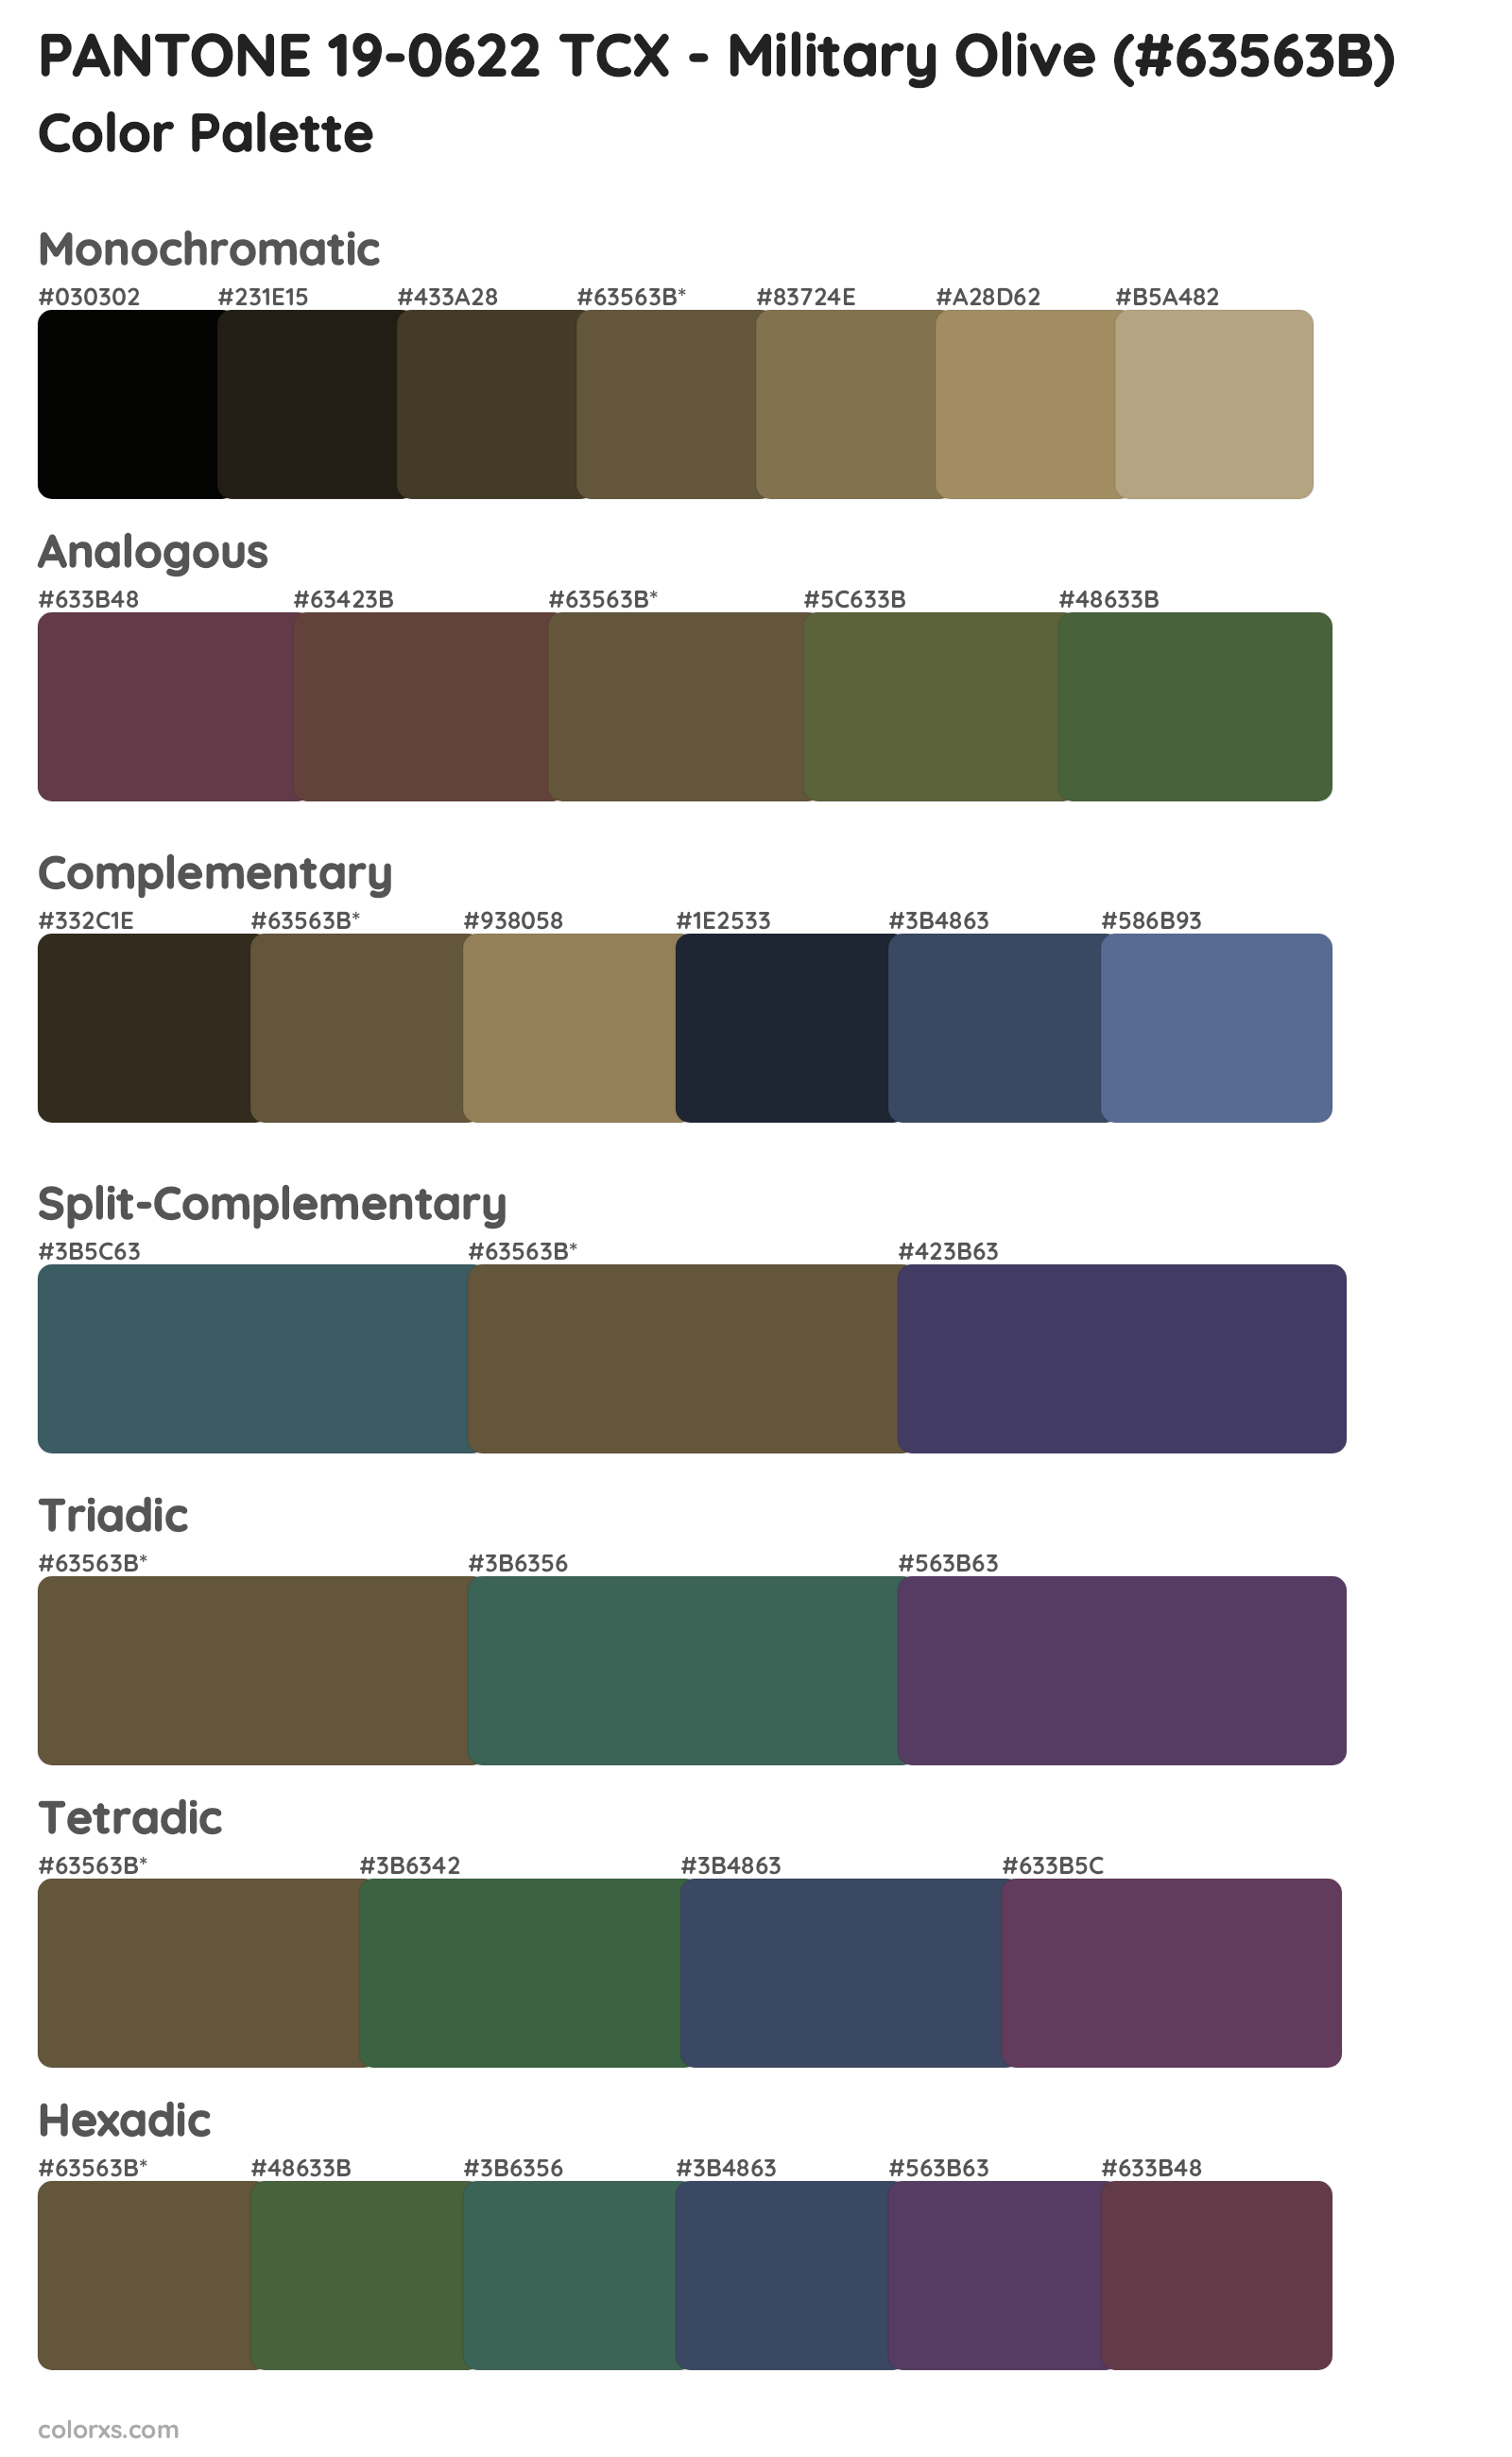 PANTONE 19-0622 TCX - Military Olive Color Scheme Palettes